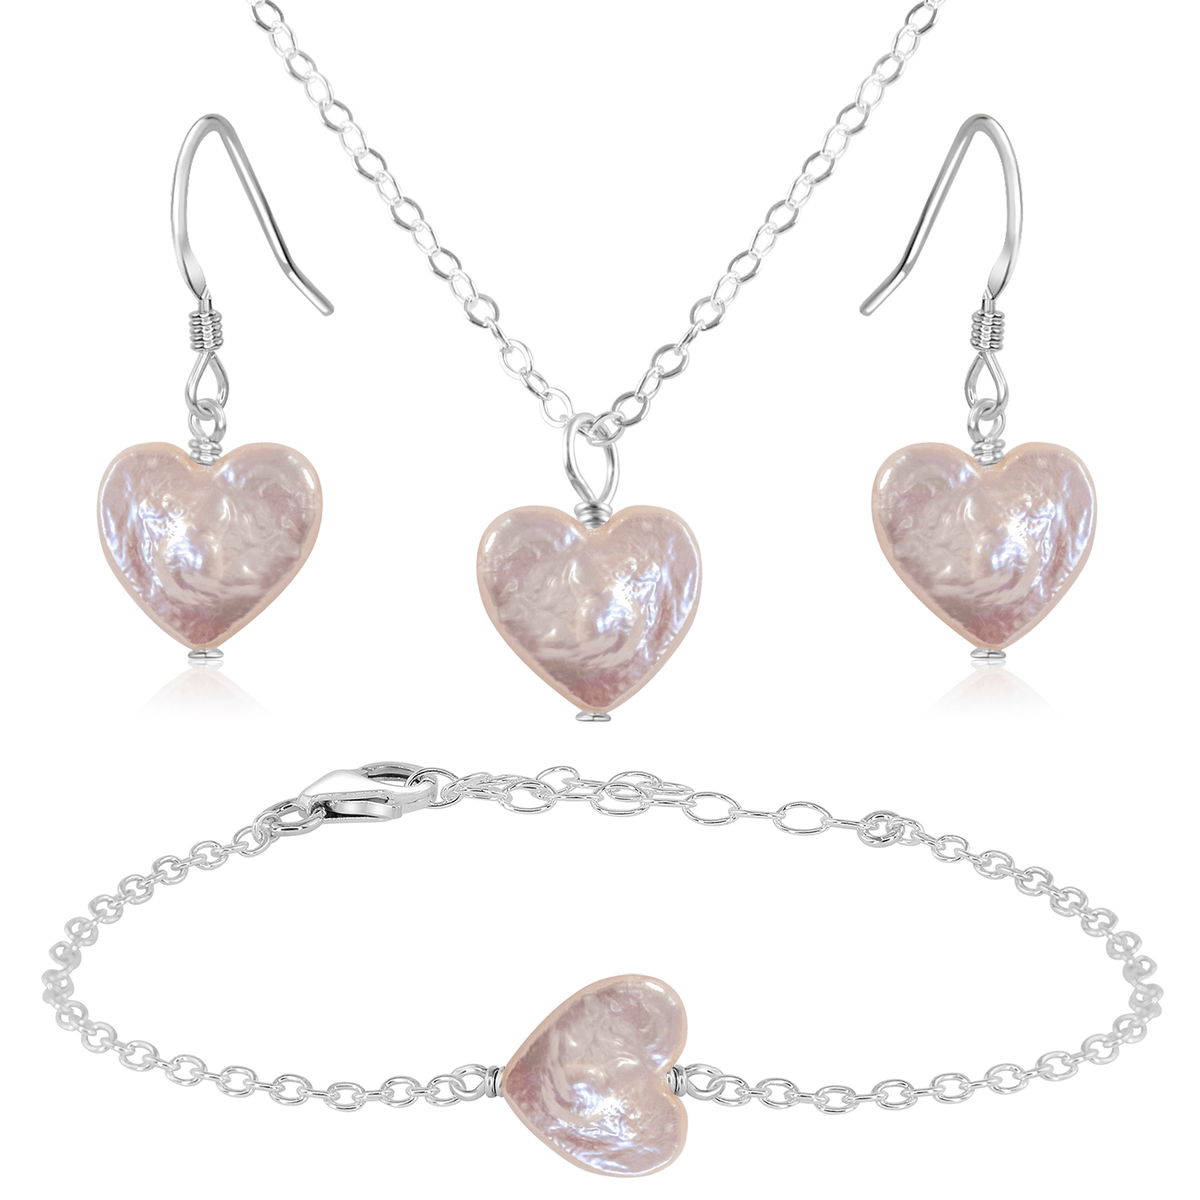 Freshwater Pearl Heart Jewellery Set - Freshwater Pearl Heart Jewellery Set - Sterling Silver / Cable / Necklace & Earrings & Bracelet - Luna Tide Handmade Crystal Jewellery